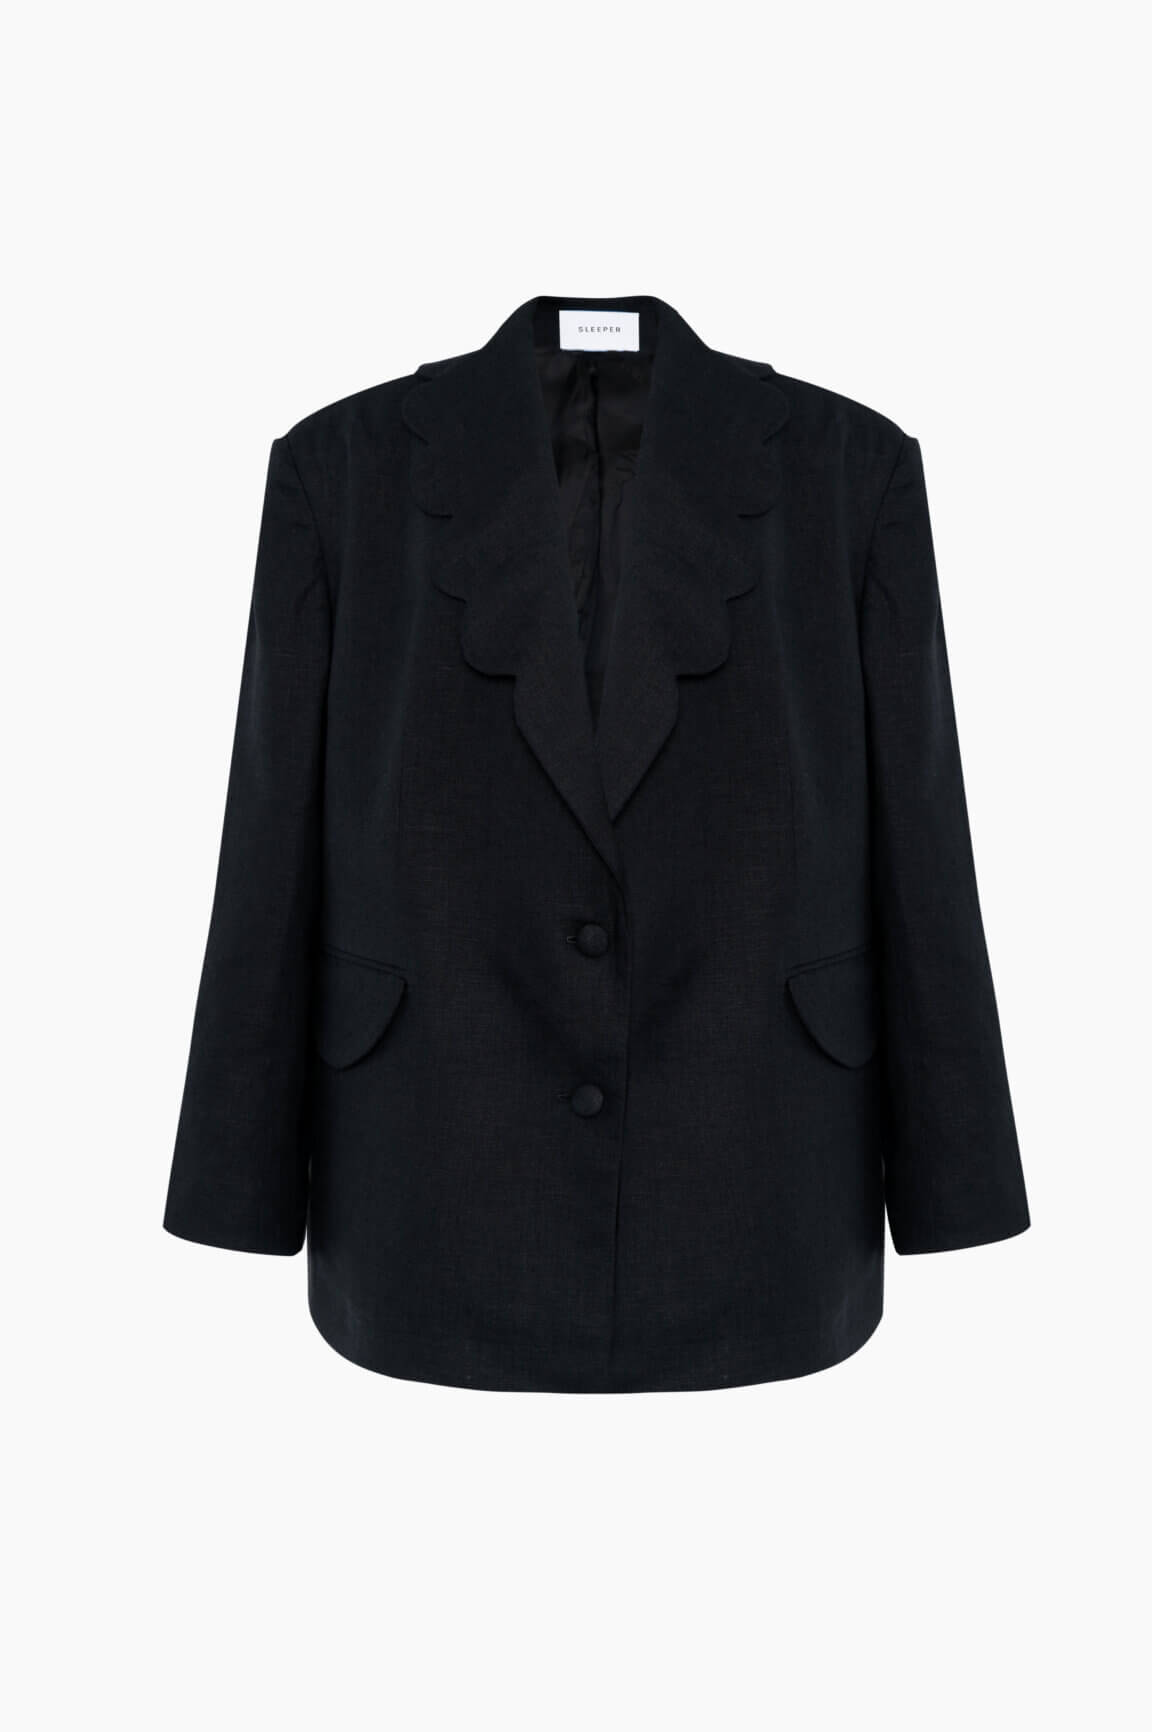 Black linen blazer | Dynasty women's jacket by Sleeper